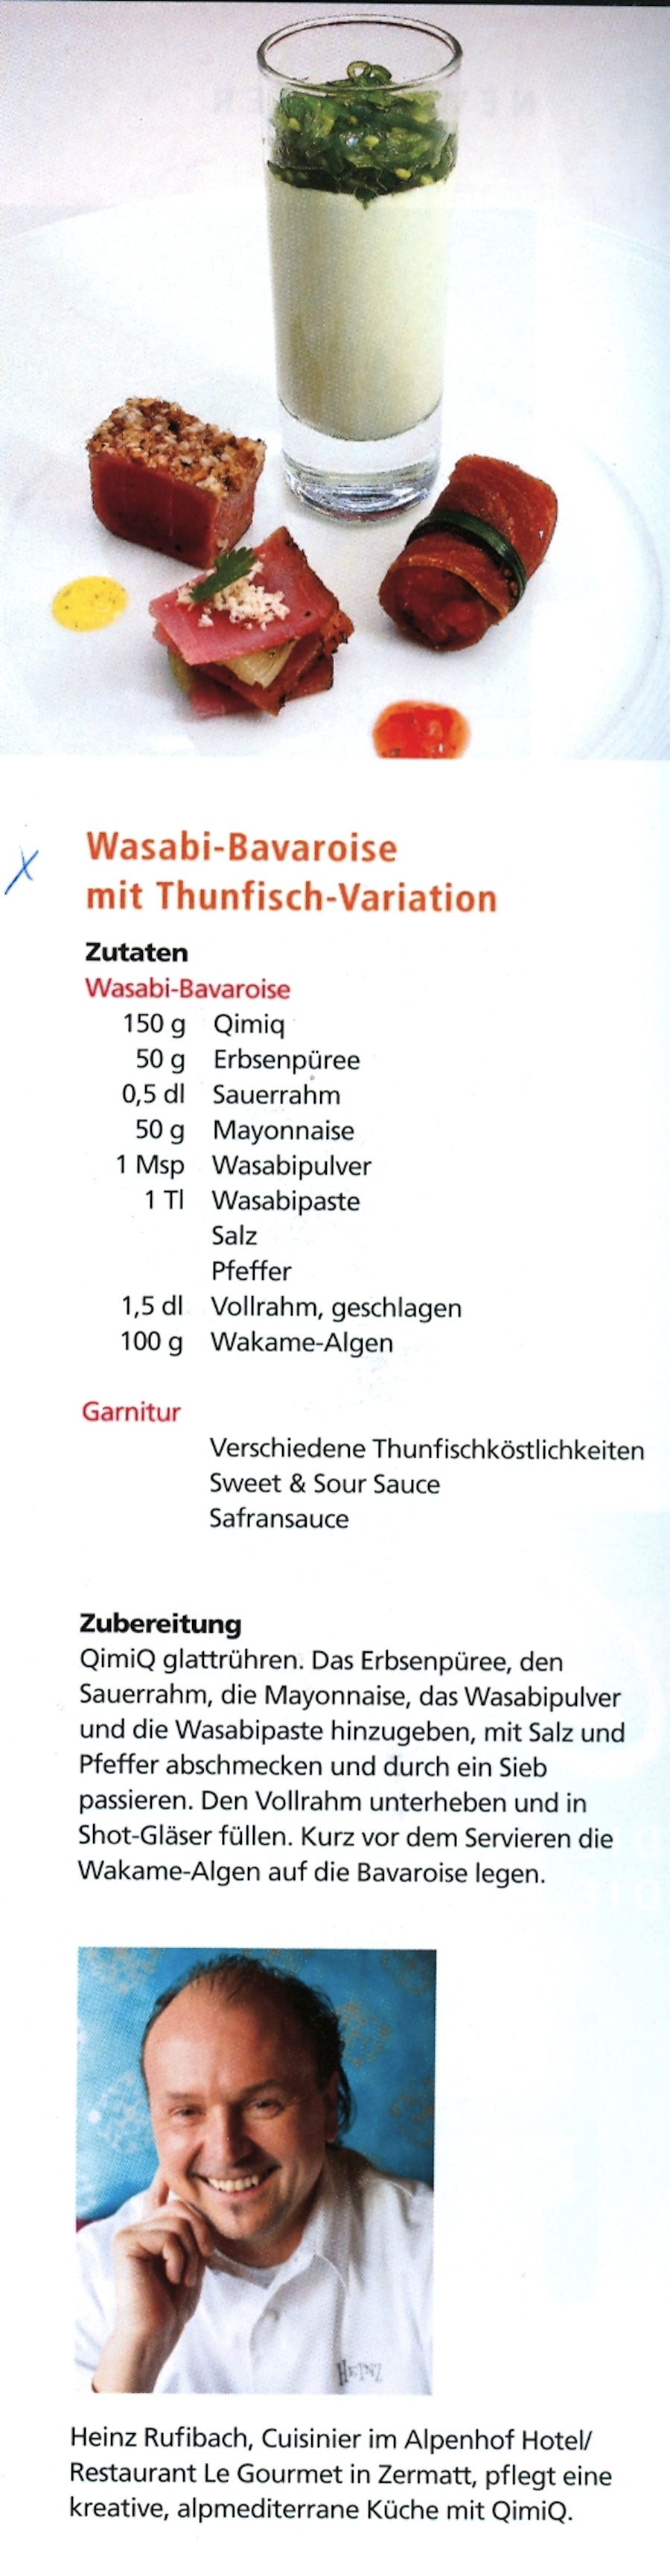 Wasabi Bavaroise mit Thunfisch Variationen